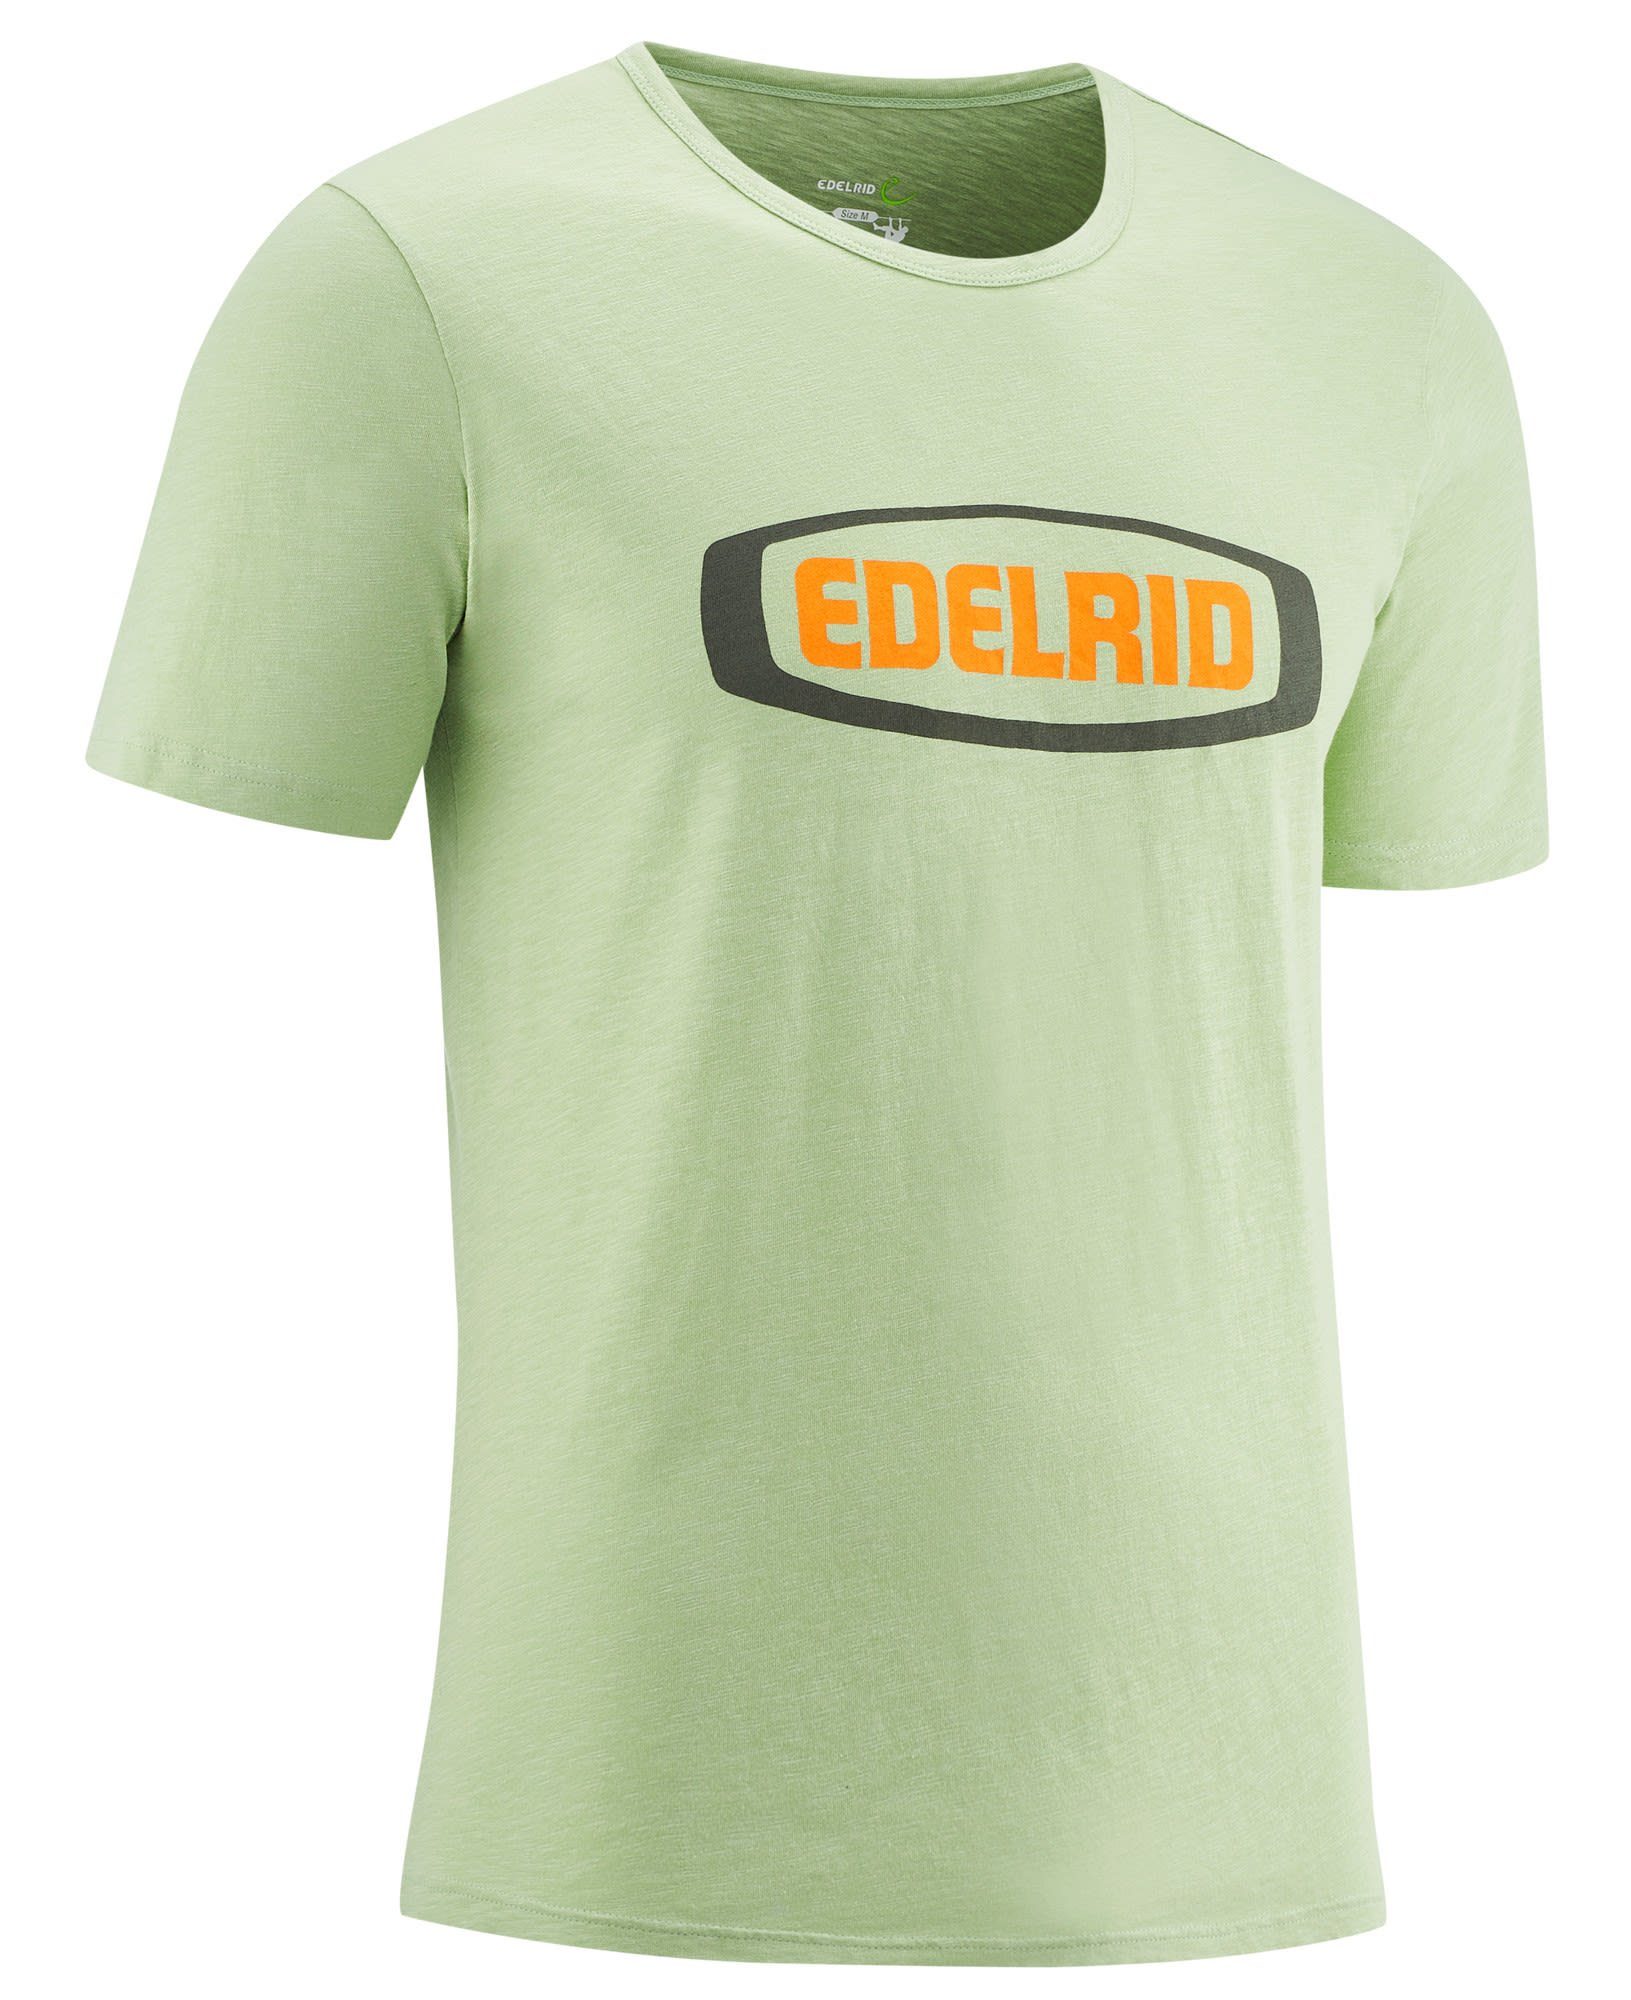 Edelrid Edelrid T-shirt M Herren Kurzarm-Shirt Highball Iv Mint T-Shirt